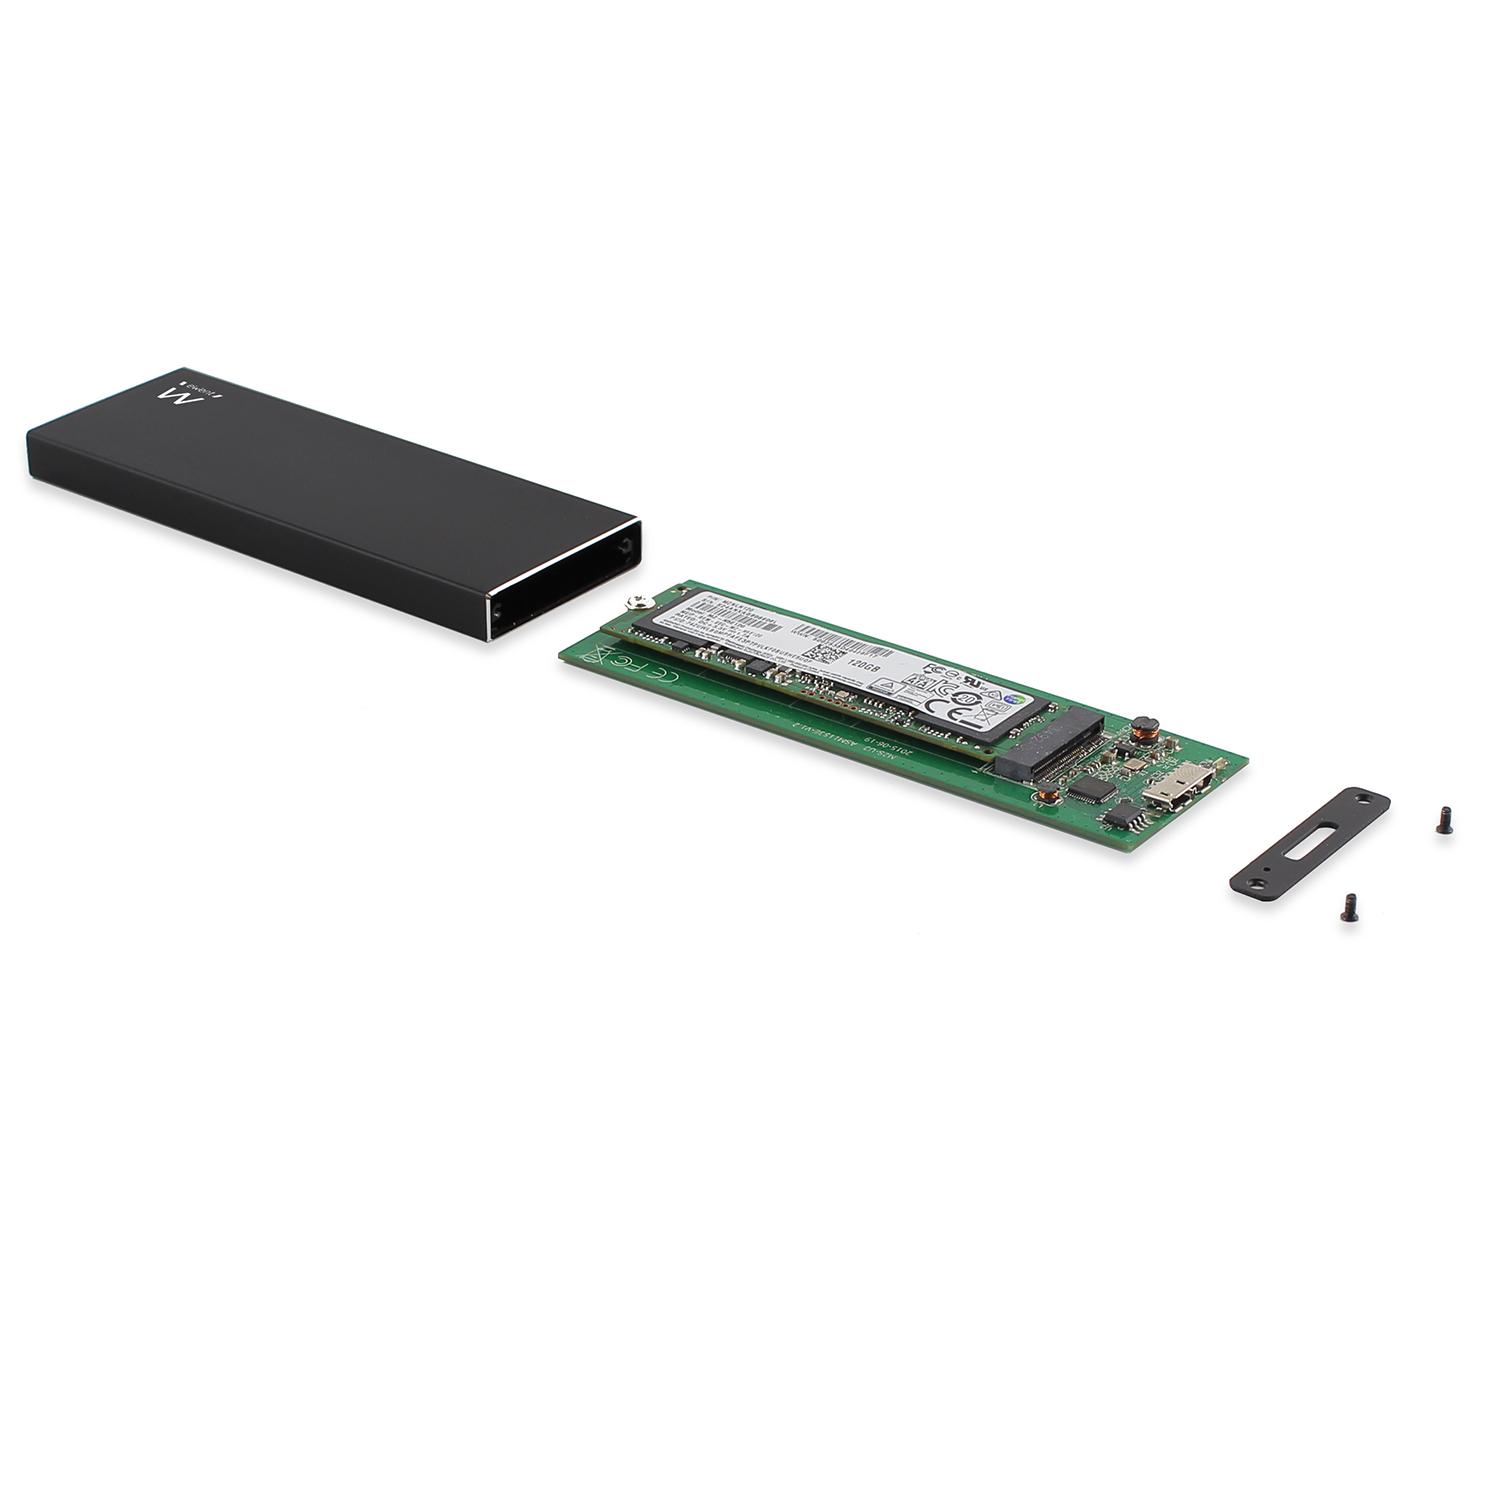 BOX EST X USB 3.1 M.2 SSD ENCLOSURE